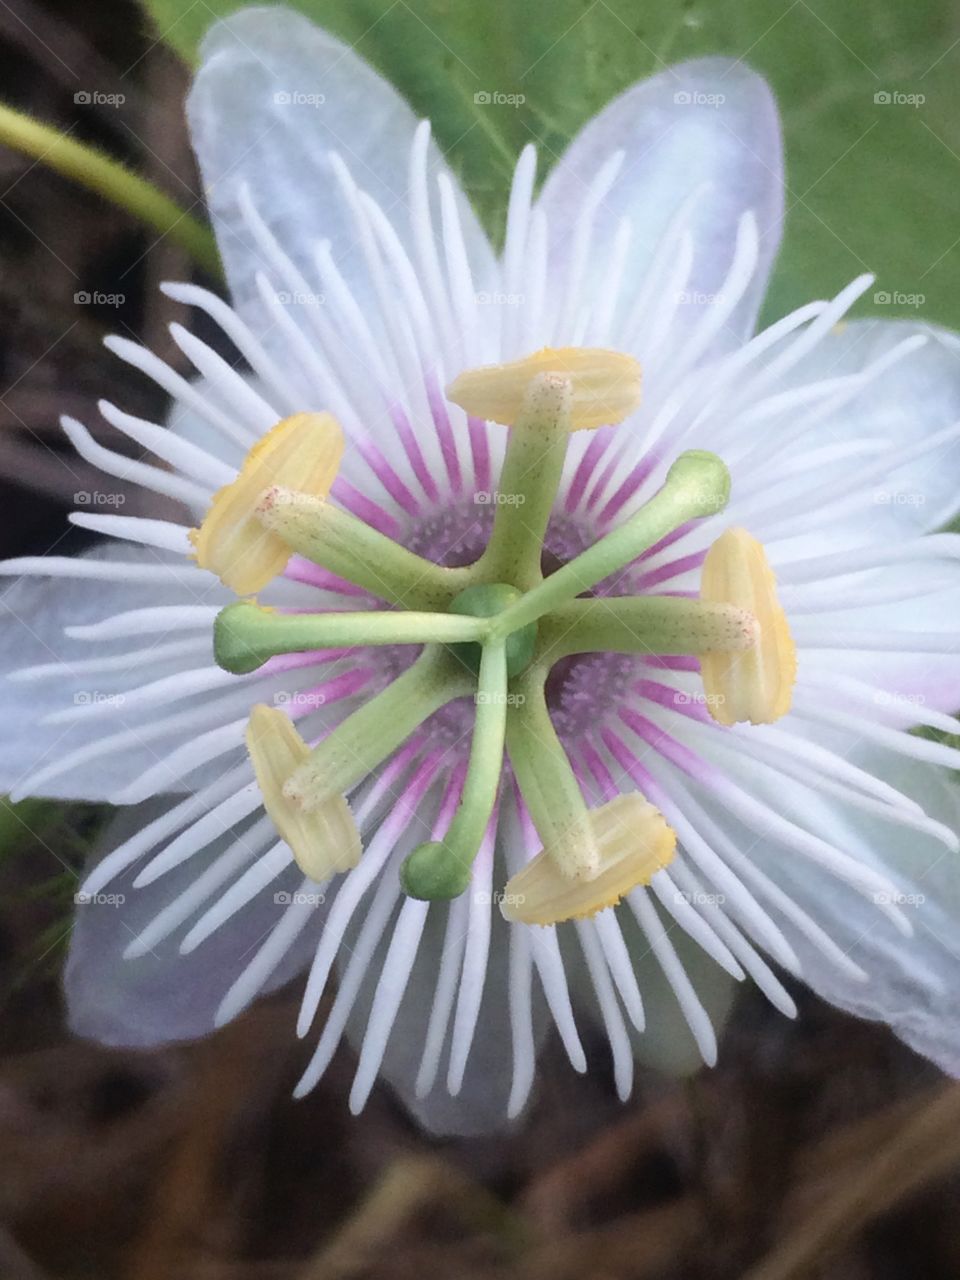 Beautiful flower 